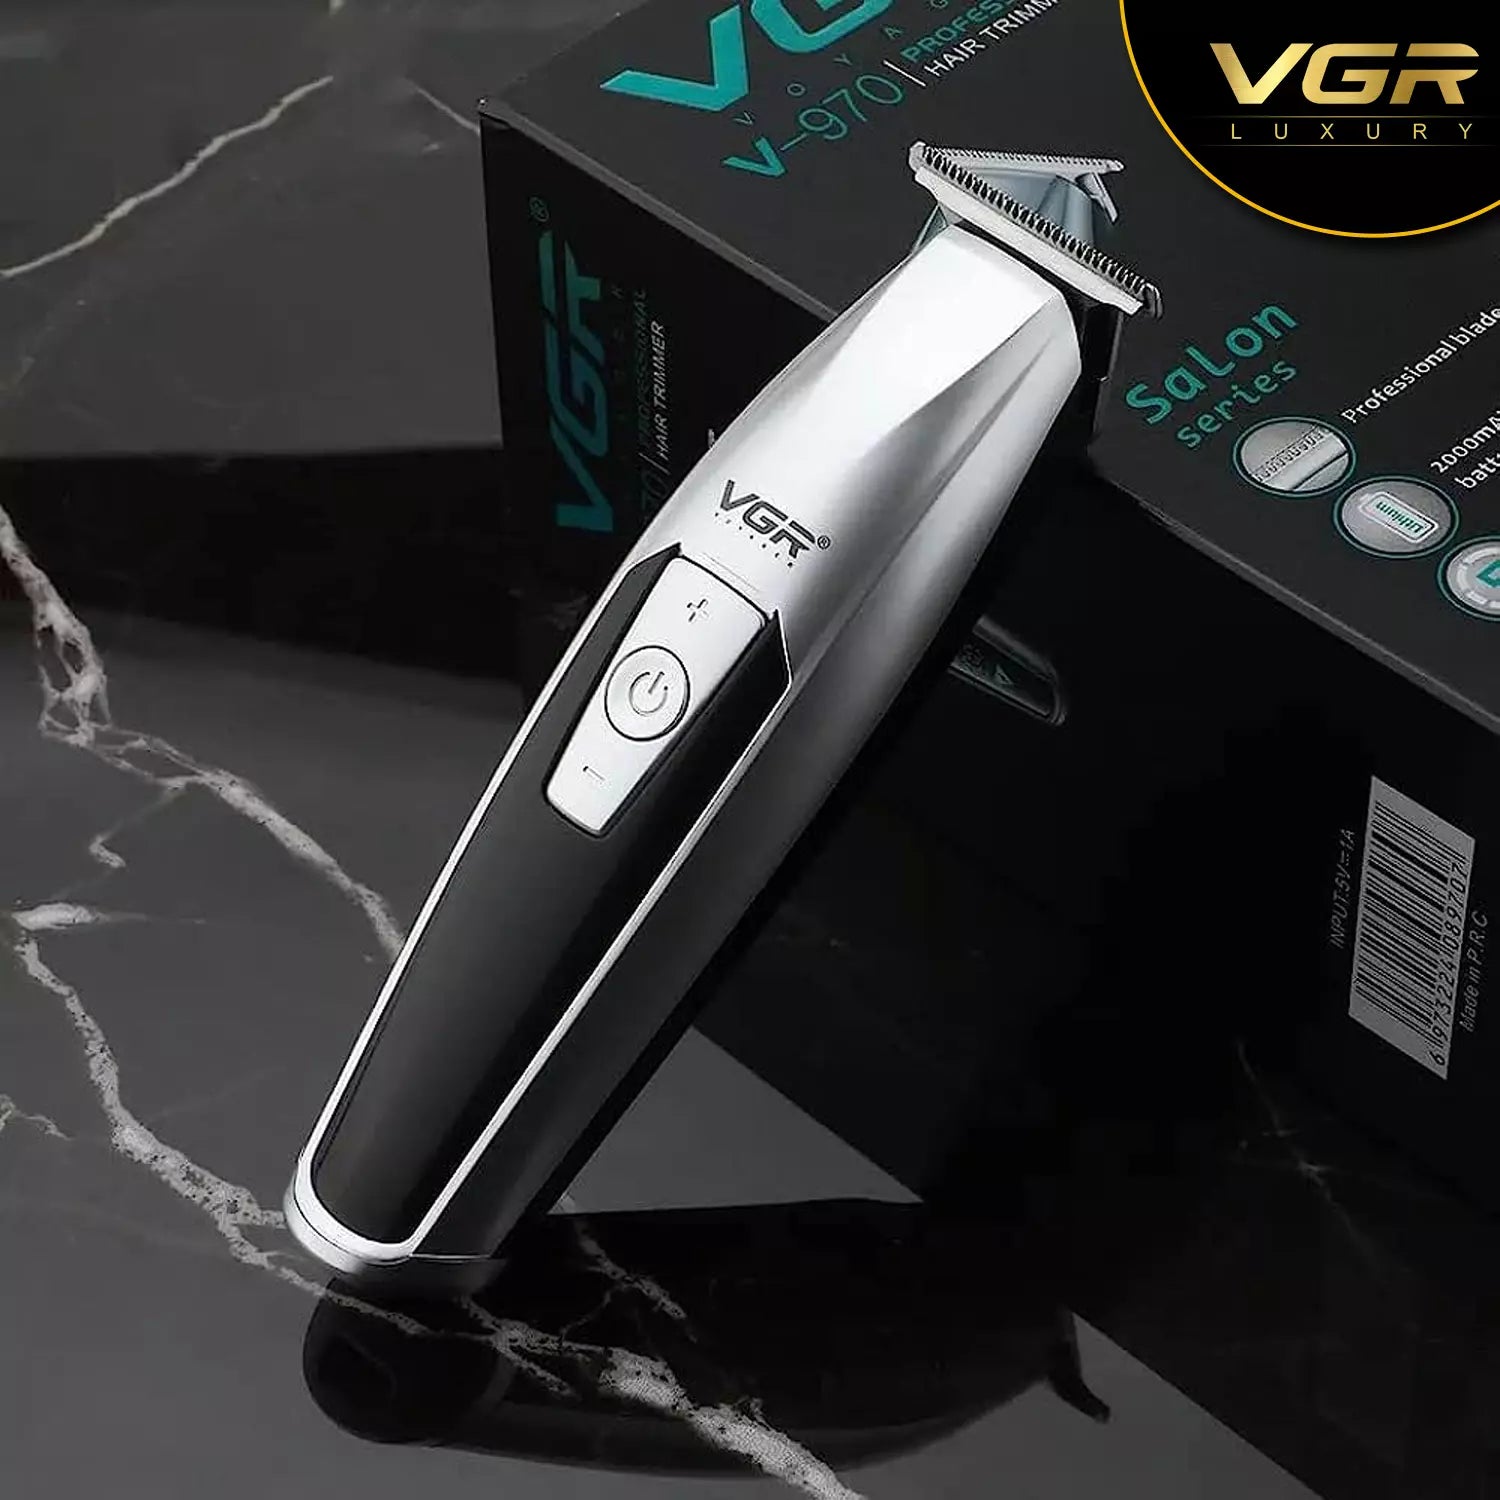 VGR V-970 Hair Trimmer For Men, Silver